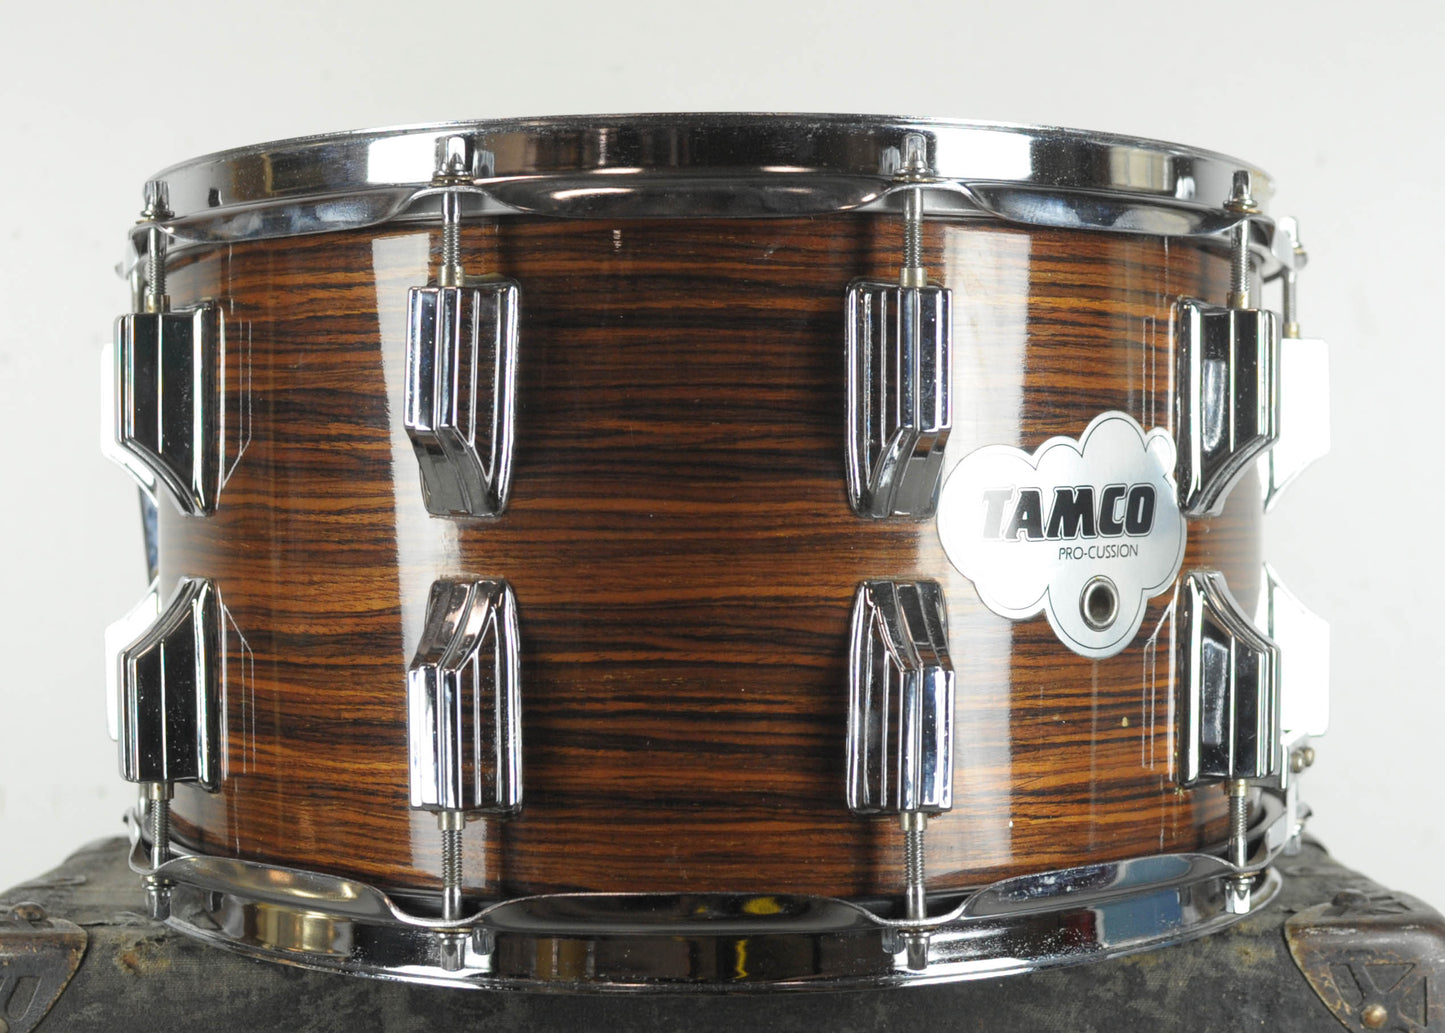 Vintage Tamco 8x14 "Rosewood" Snare Drum